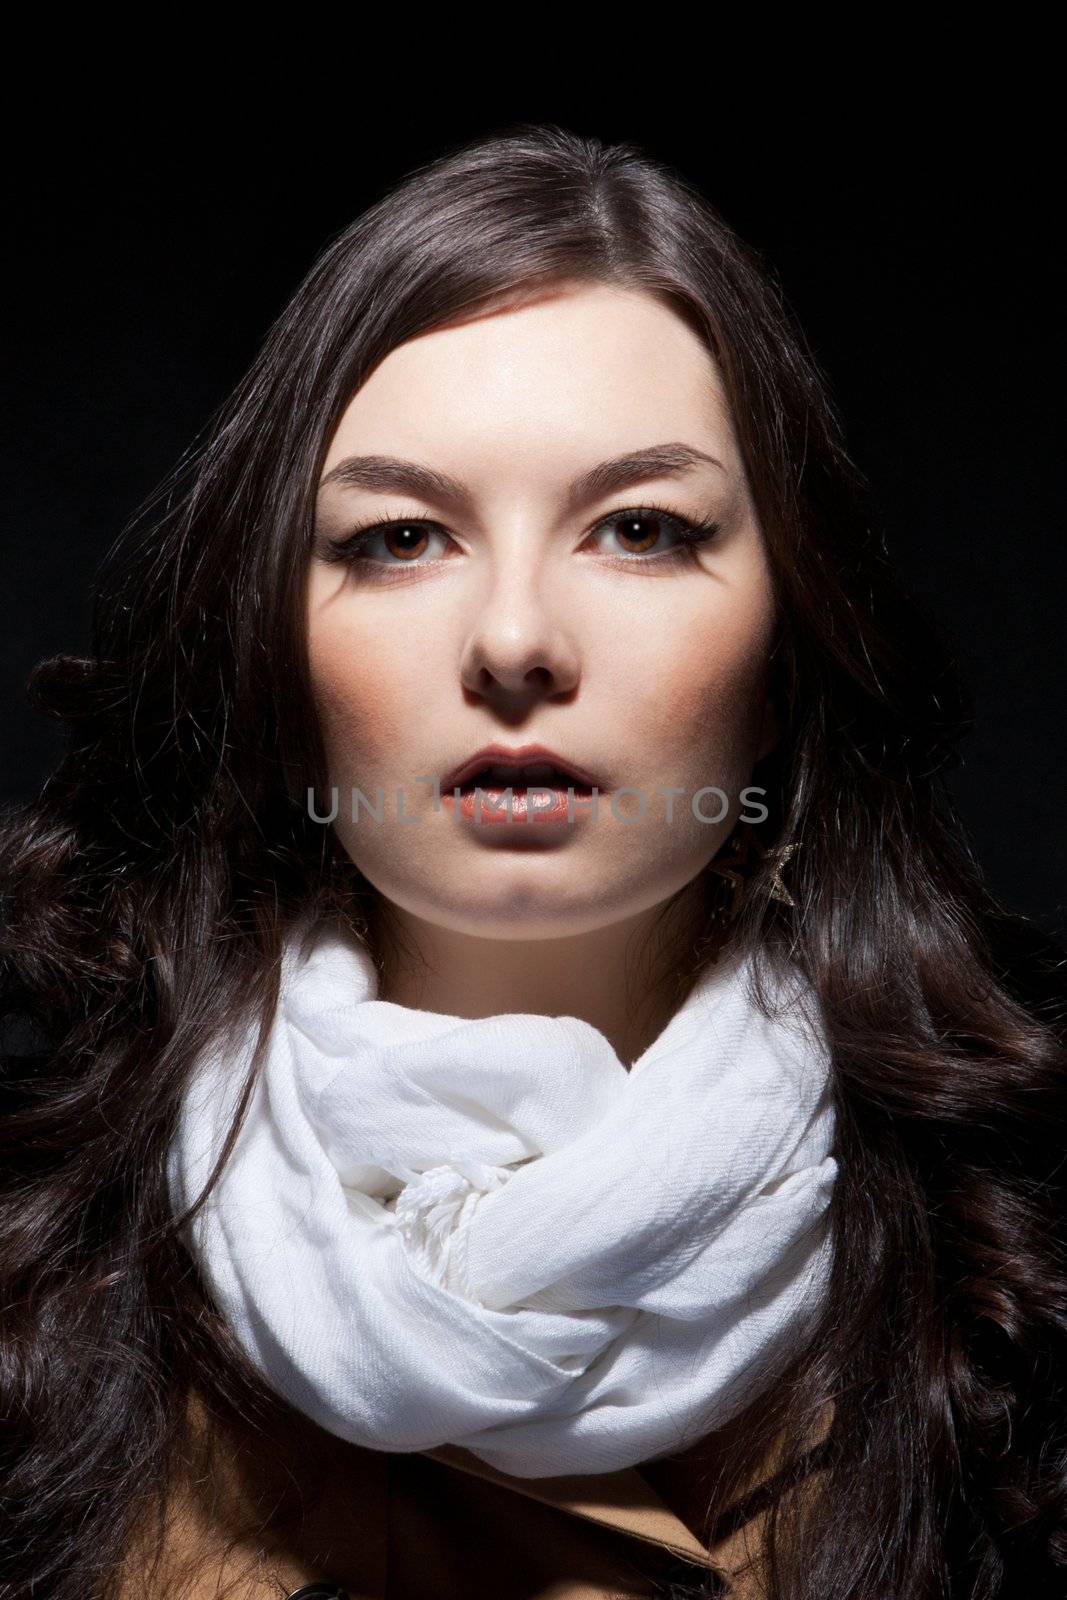 Portrait of russian woman on dark background by nigerfoxy